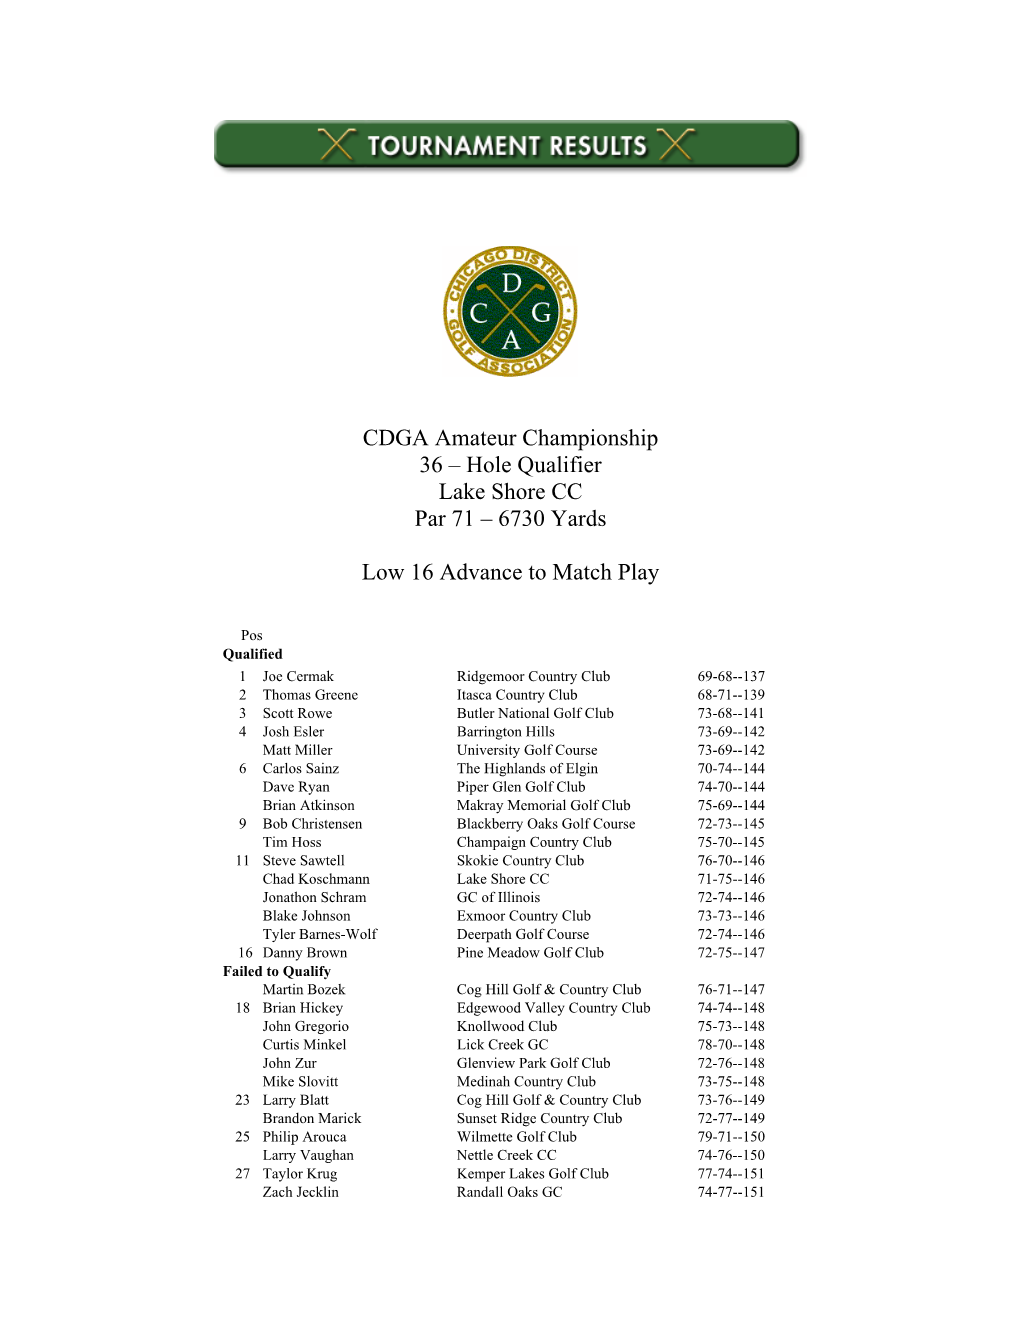 CDGA Amateur Championship 36 – Hole Qualifier Lake Shore CC Par 71 – 6730 Yards